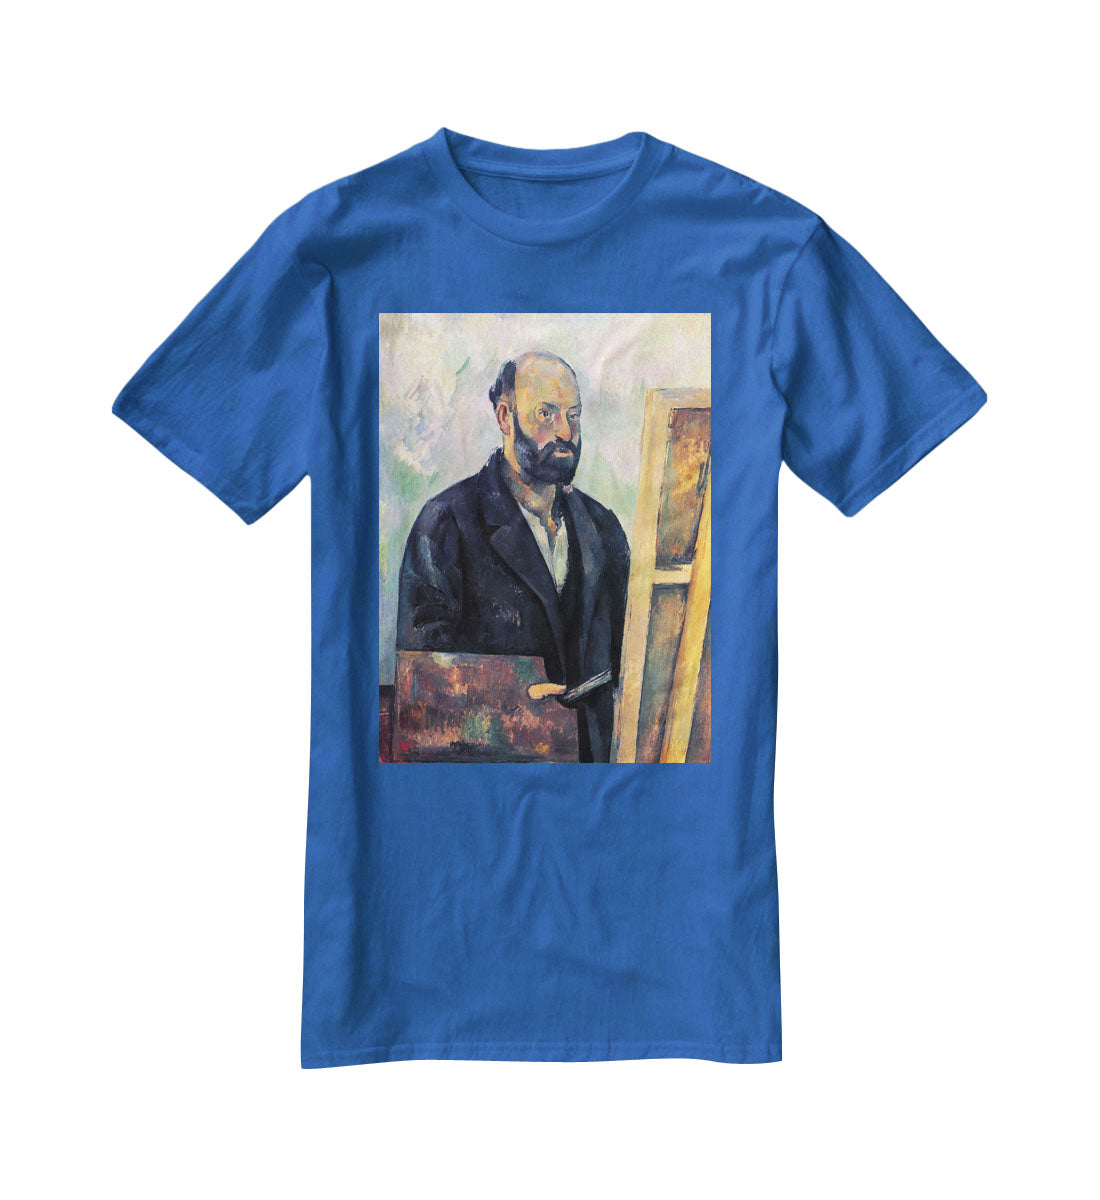 Self-portrait with Pallette by Cezanne T-Shirt - Canvas Art Rocks - 2